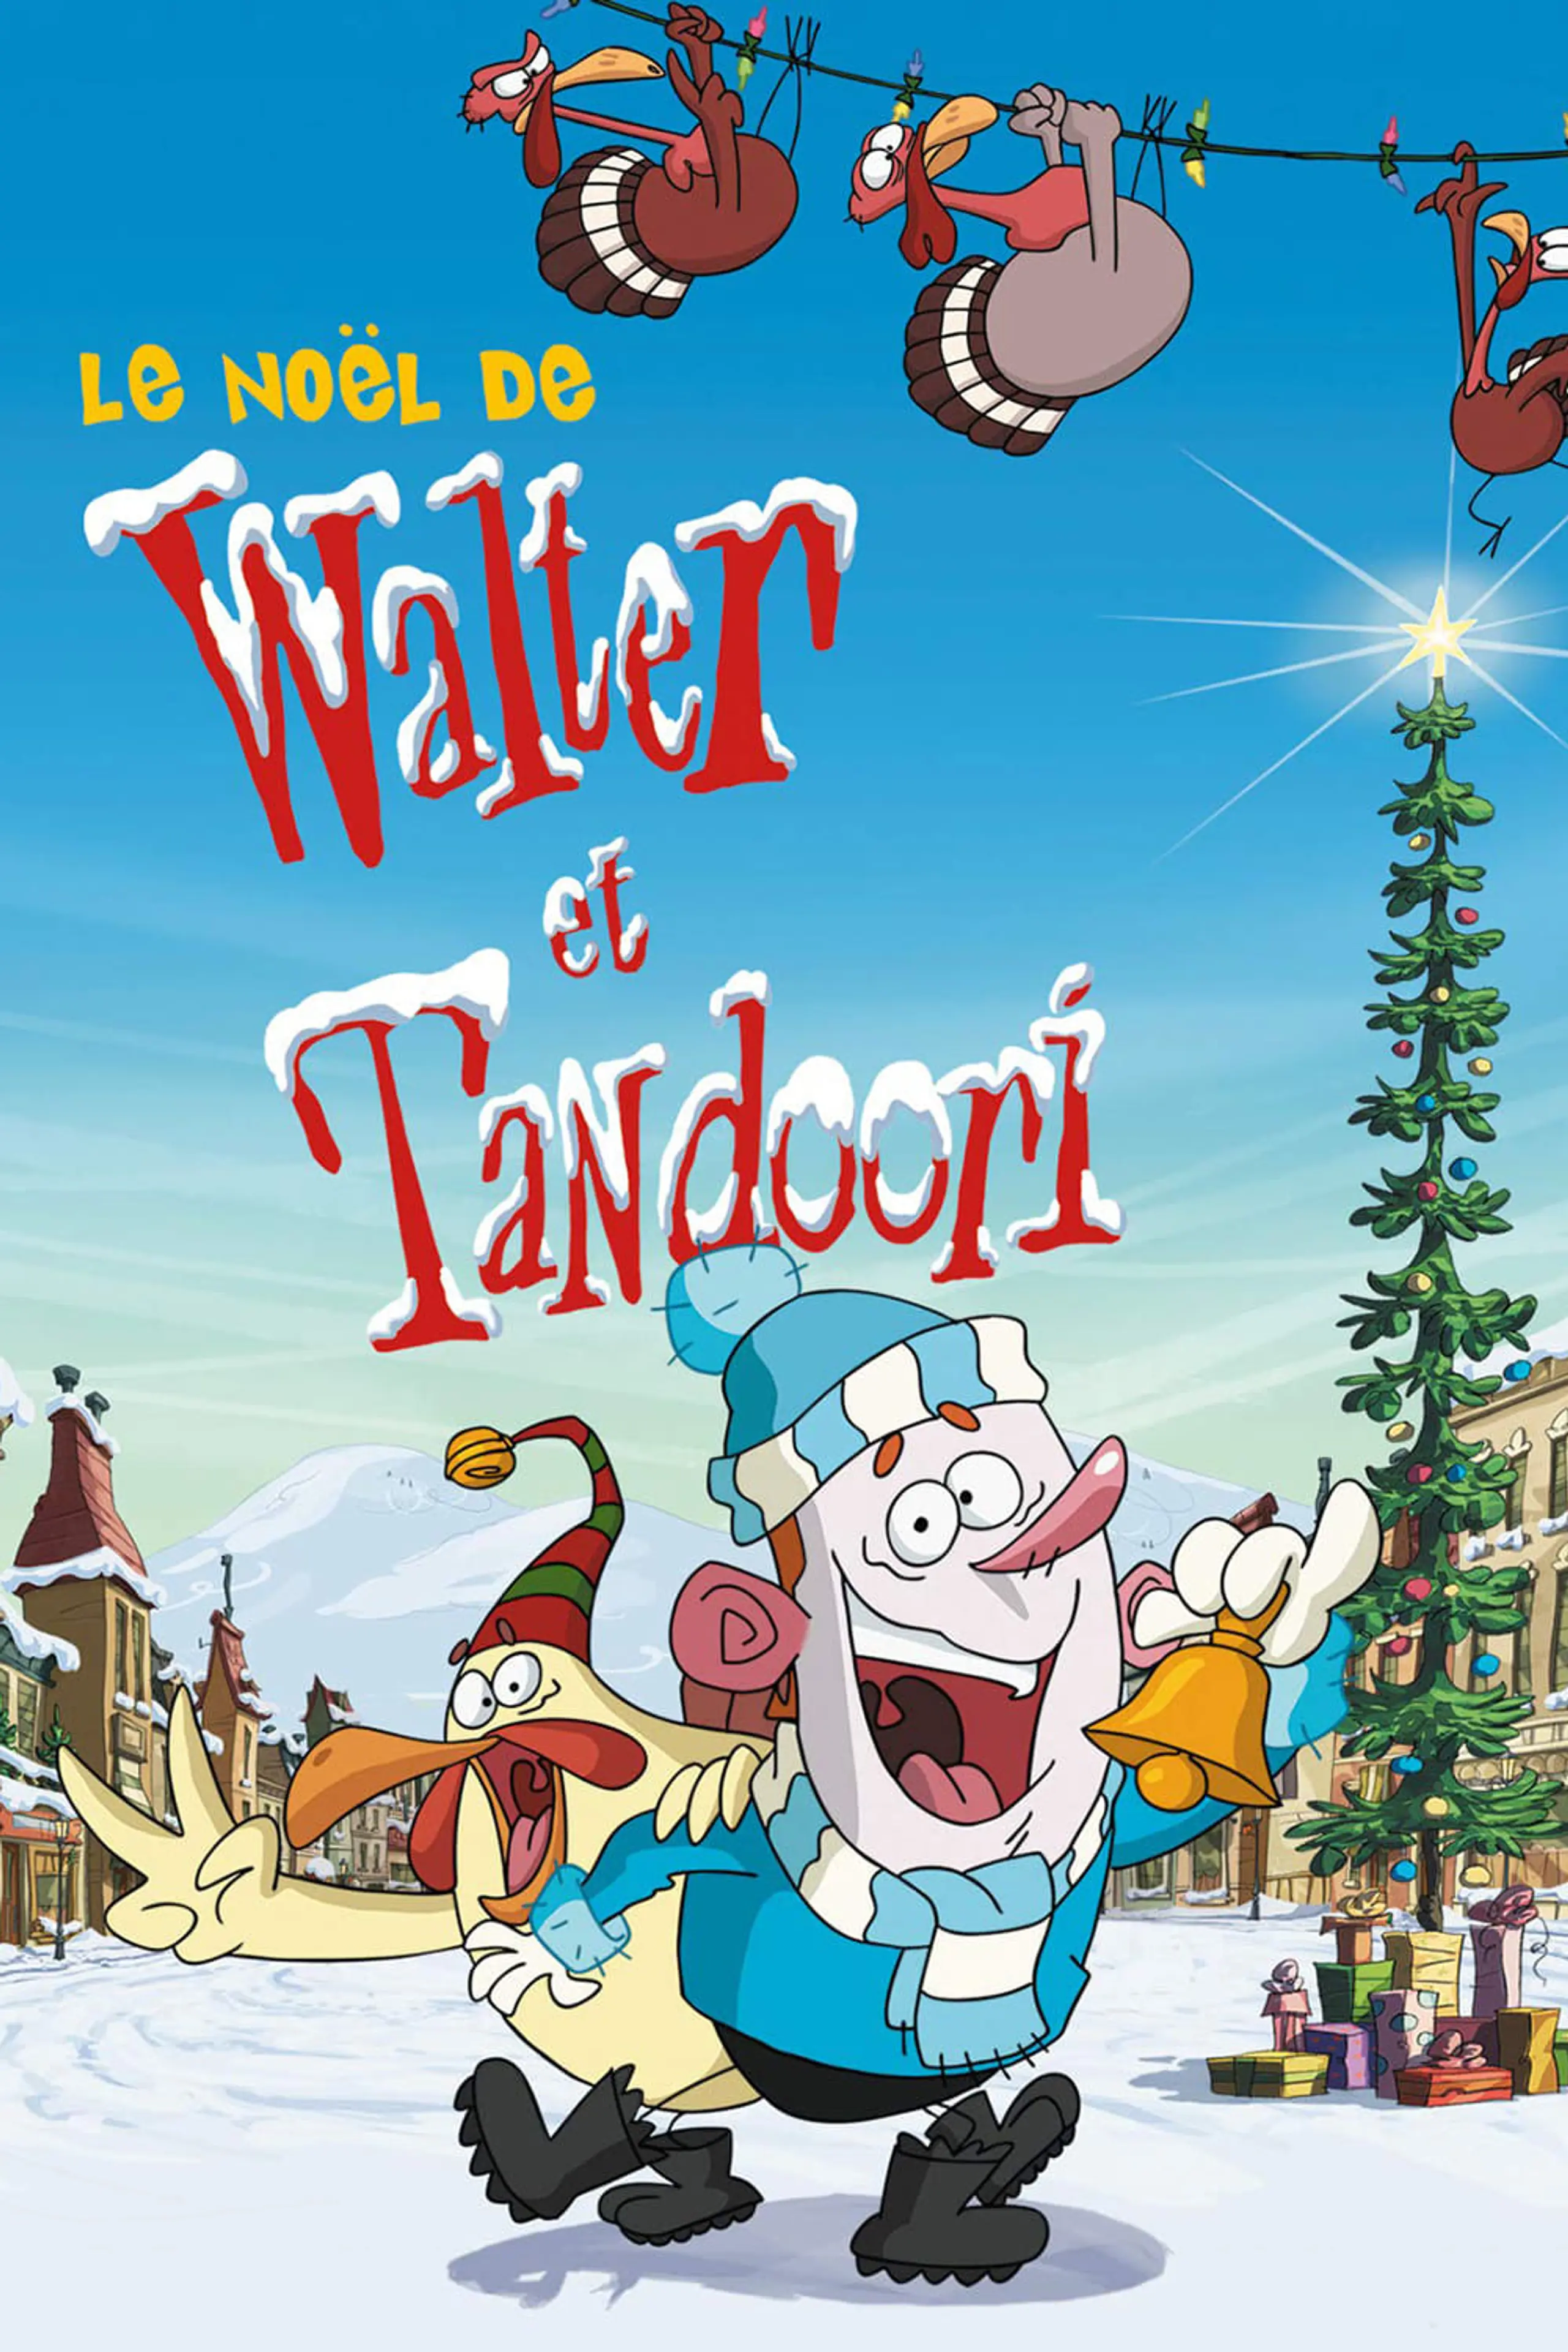 Le Noël de Walter et Tandoori